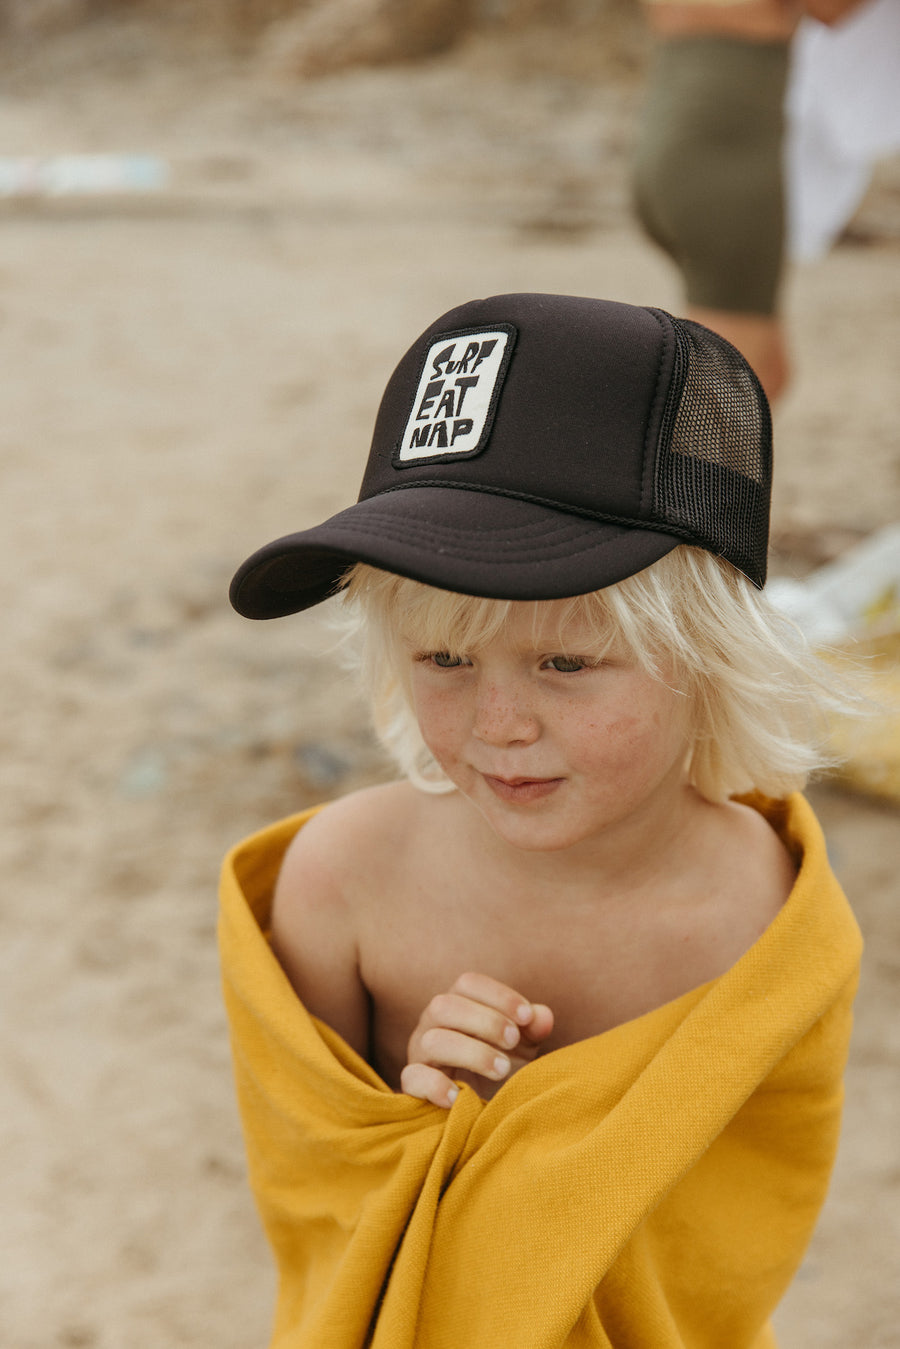 Black Embroidered Surf Eat Nap Snapback Hat